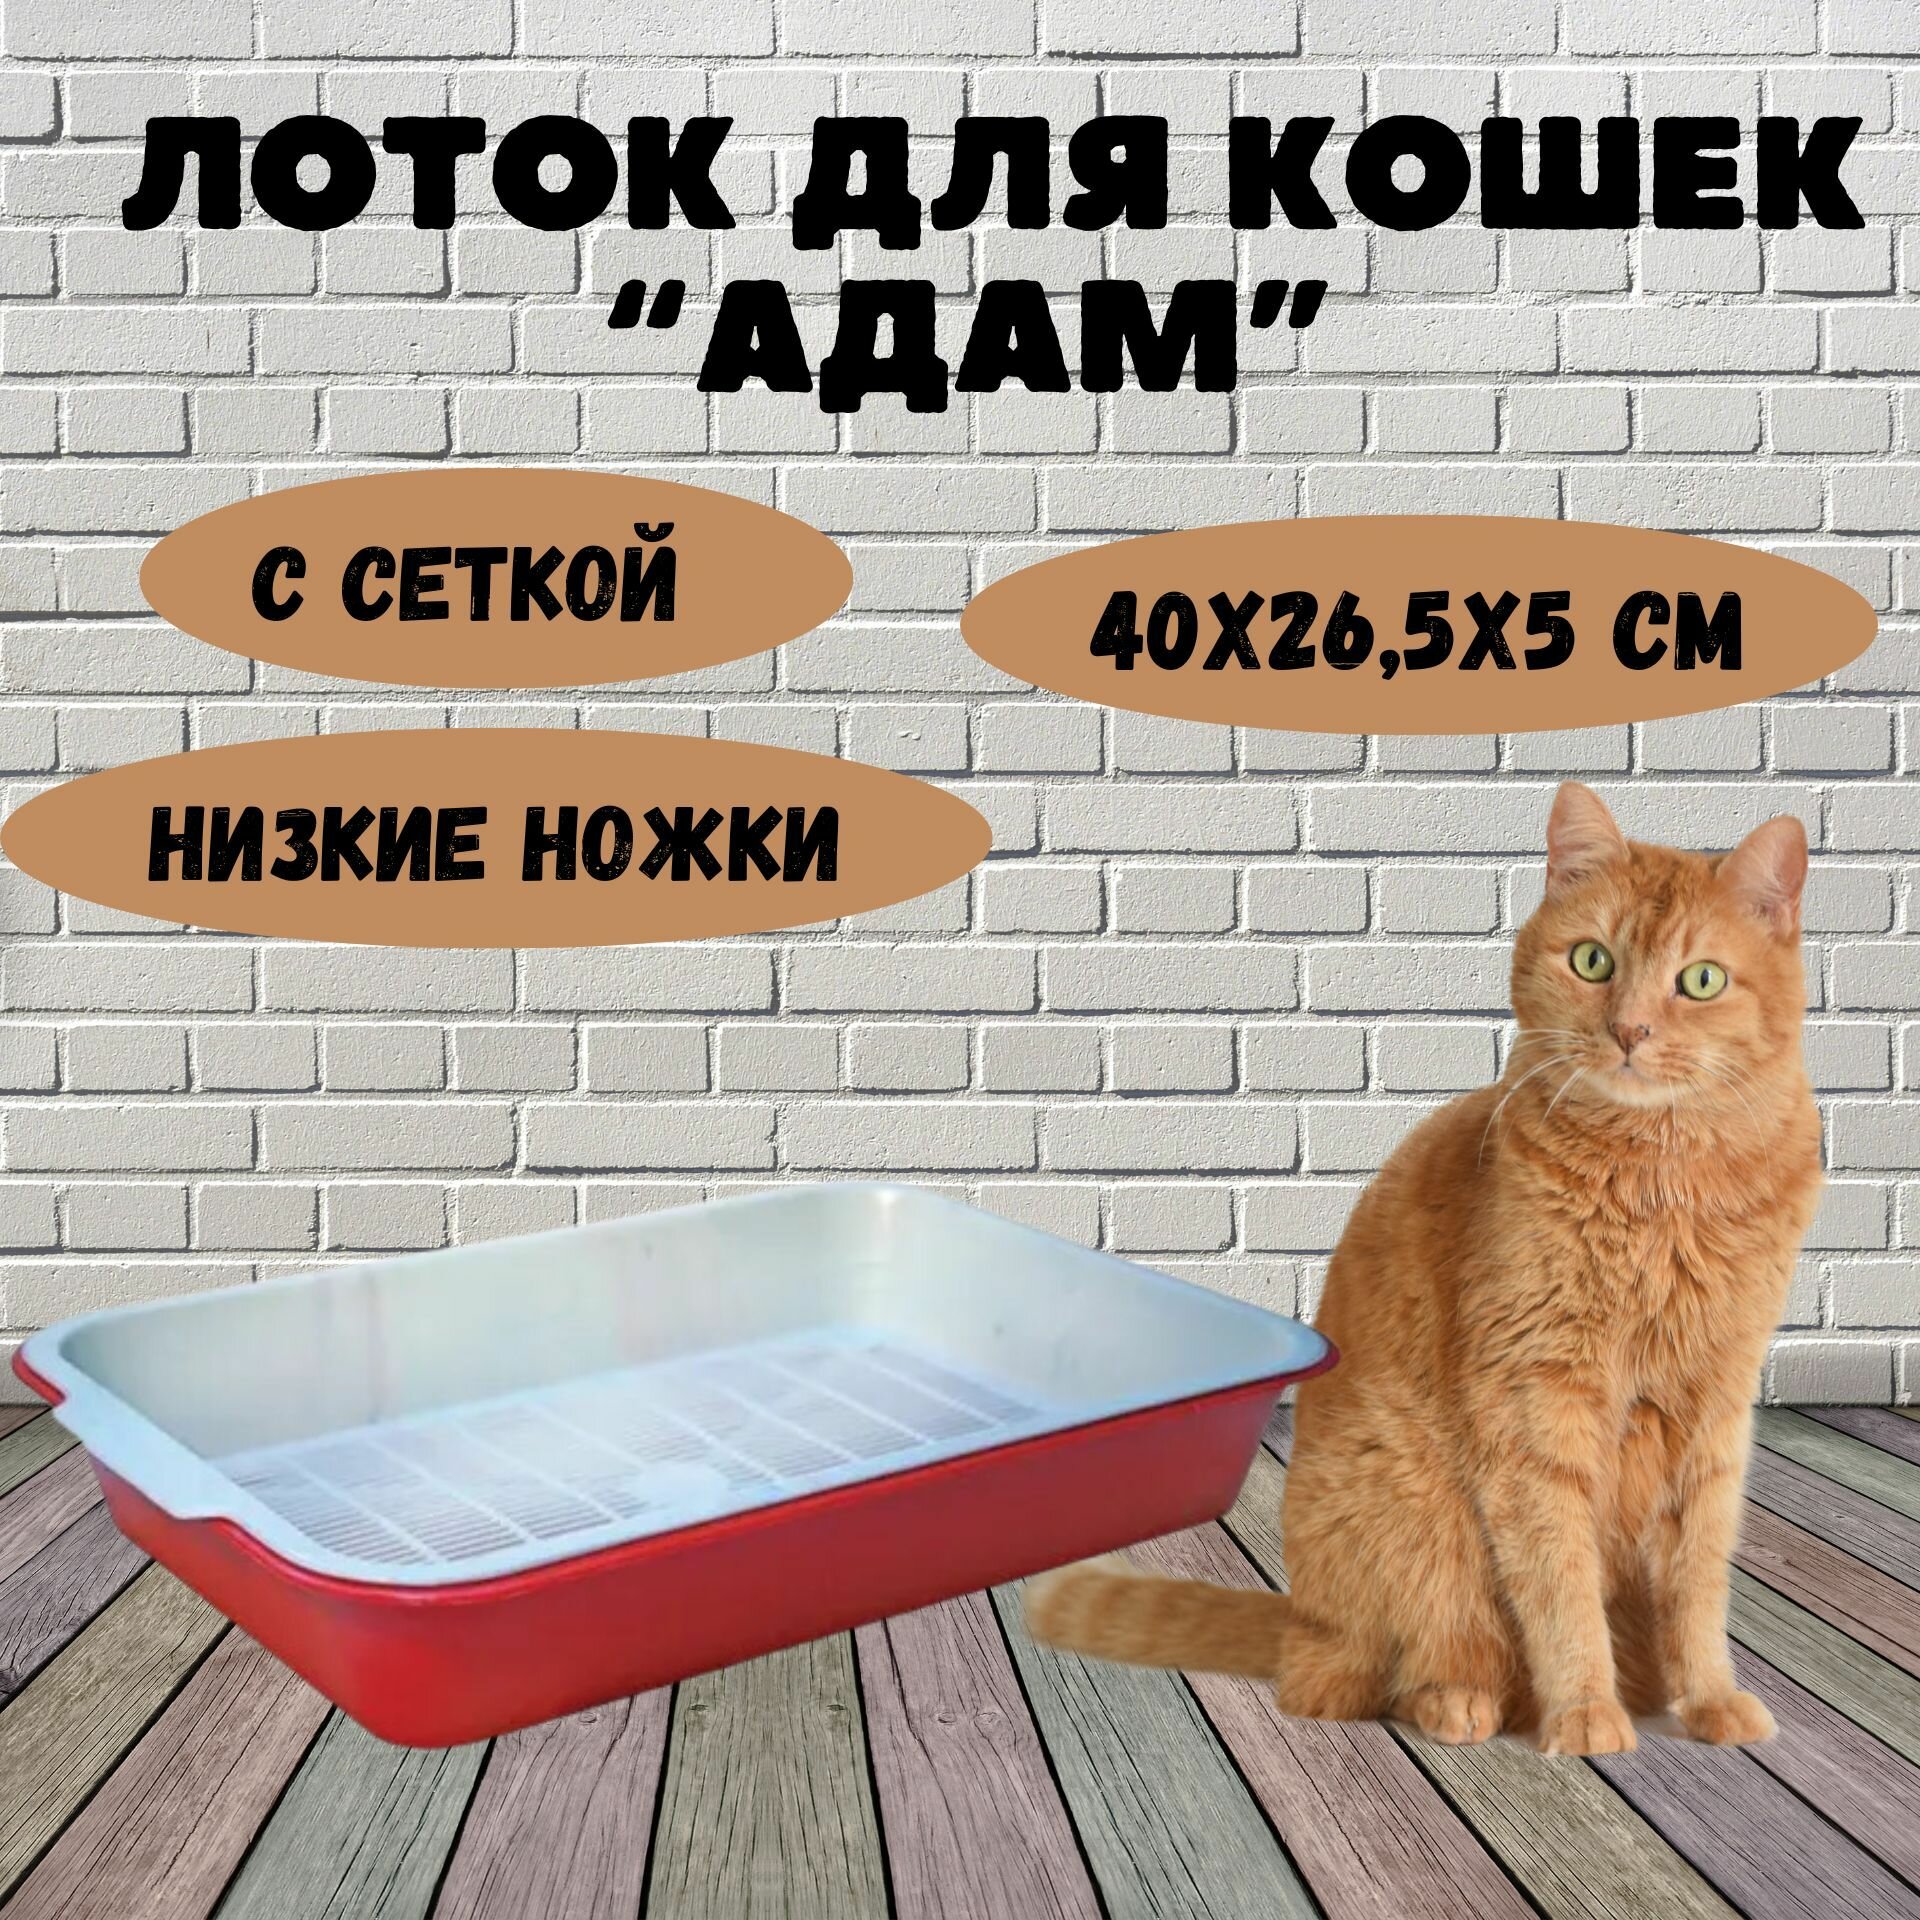 Лоток для кошек "Адам" с сеткой низкие ножки, 40х26,5х5 см - фотография № 1